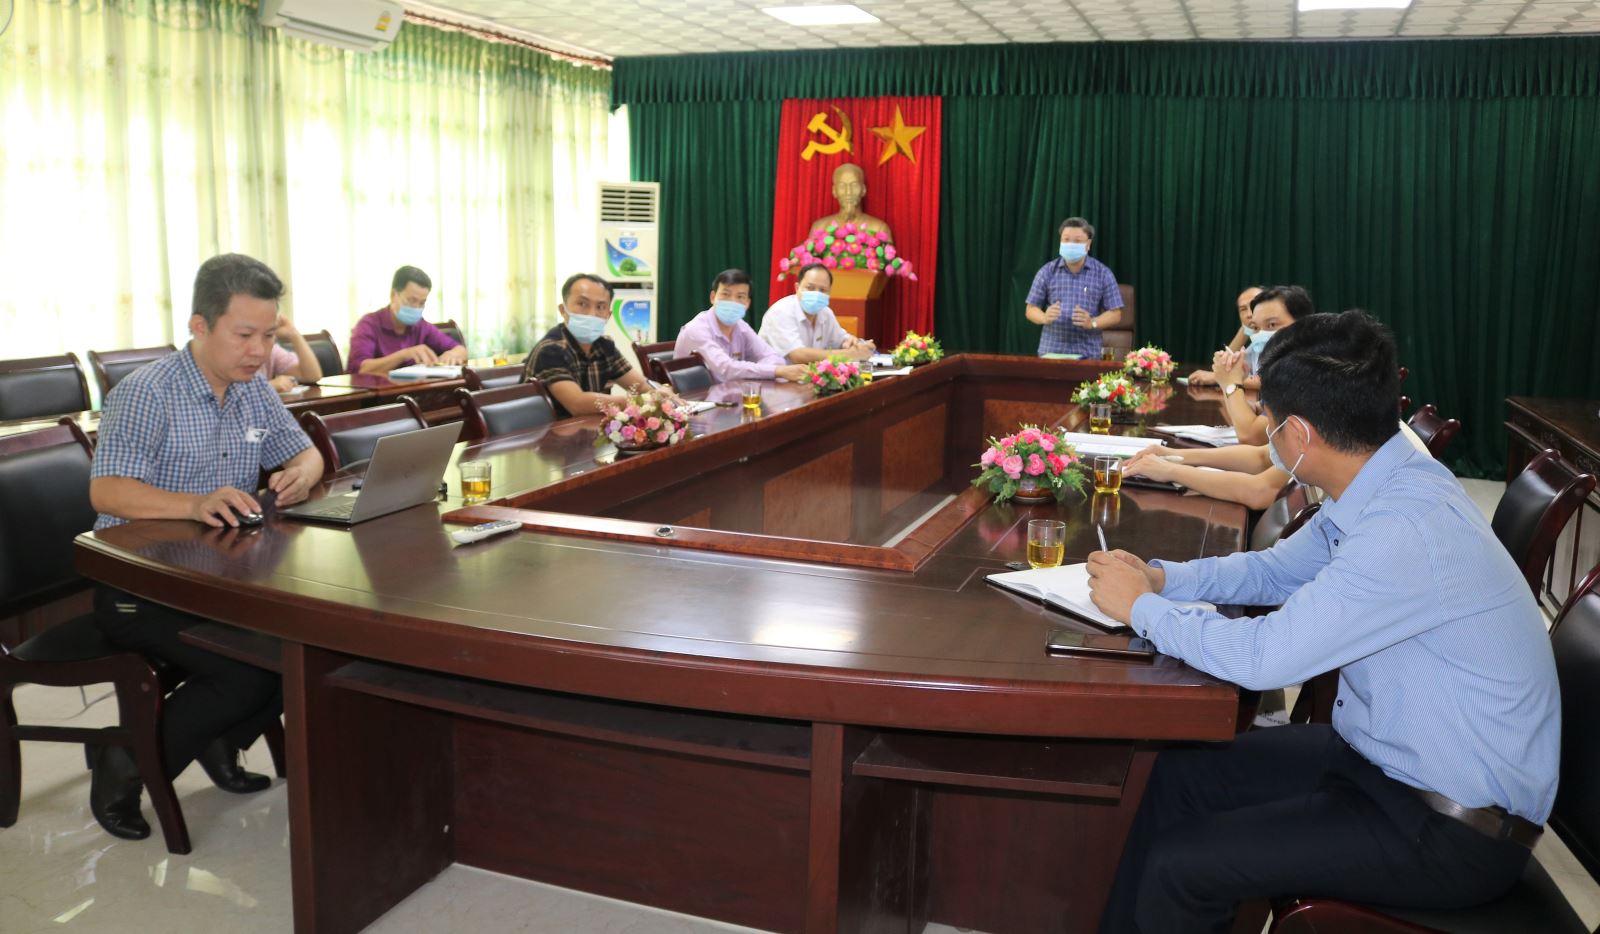 Trường Cao đẳng Việt - Đức Nghệ An tổ chức tập huấn bồi dưỡng nghiệp vụ đào tạo trực tuyến cho cán bộ, giảng viên Nhà trường